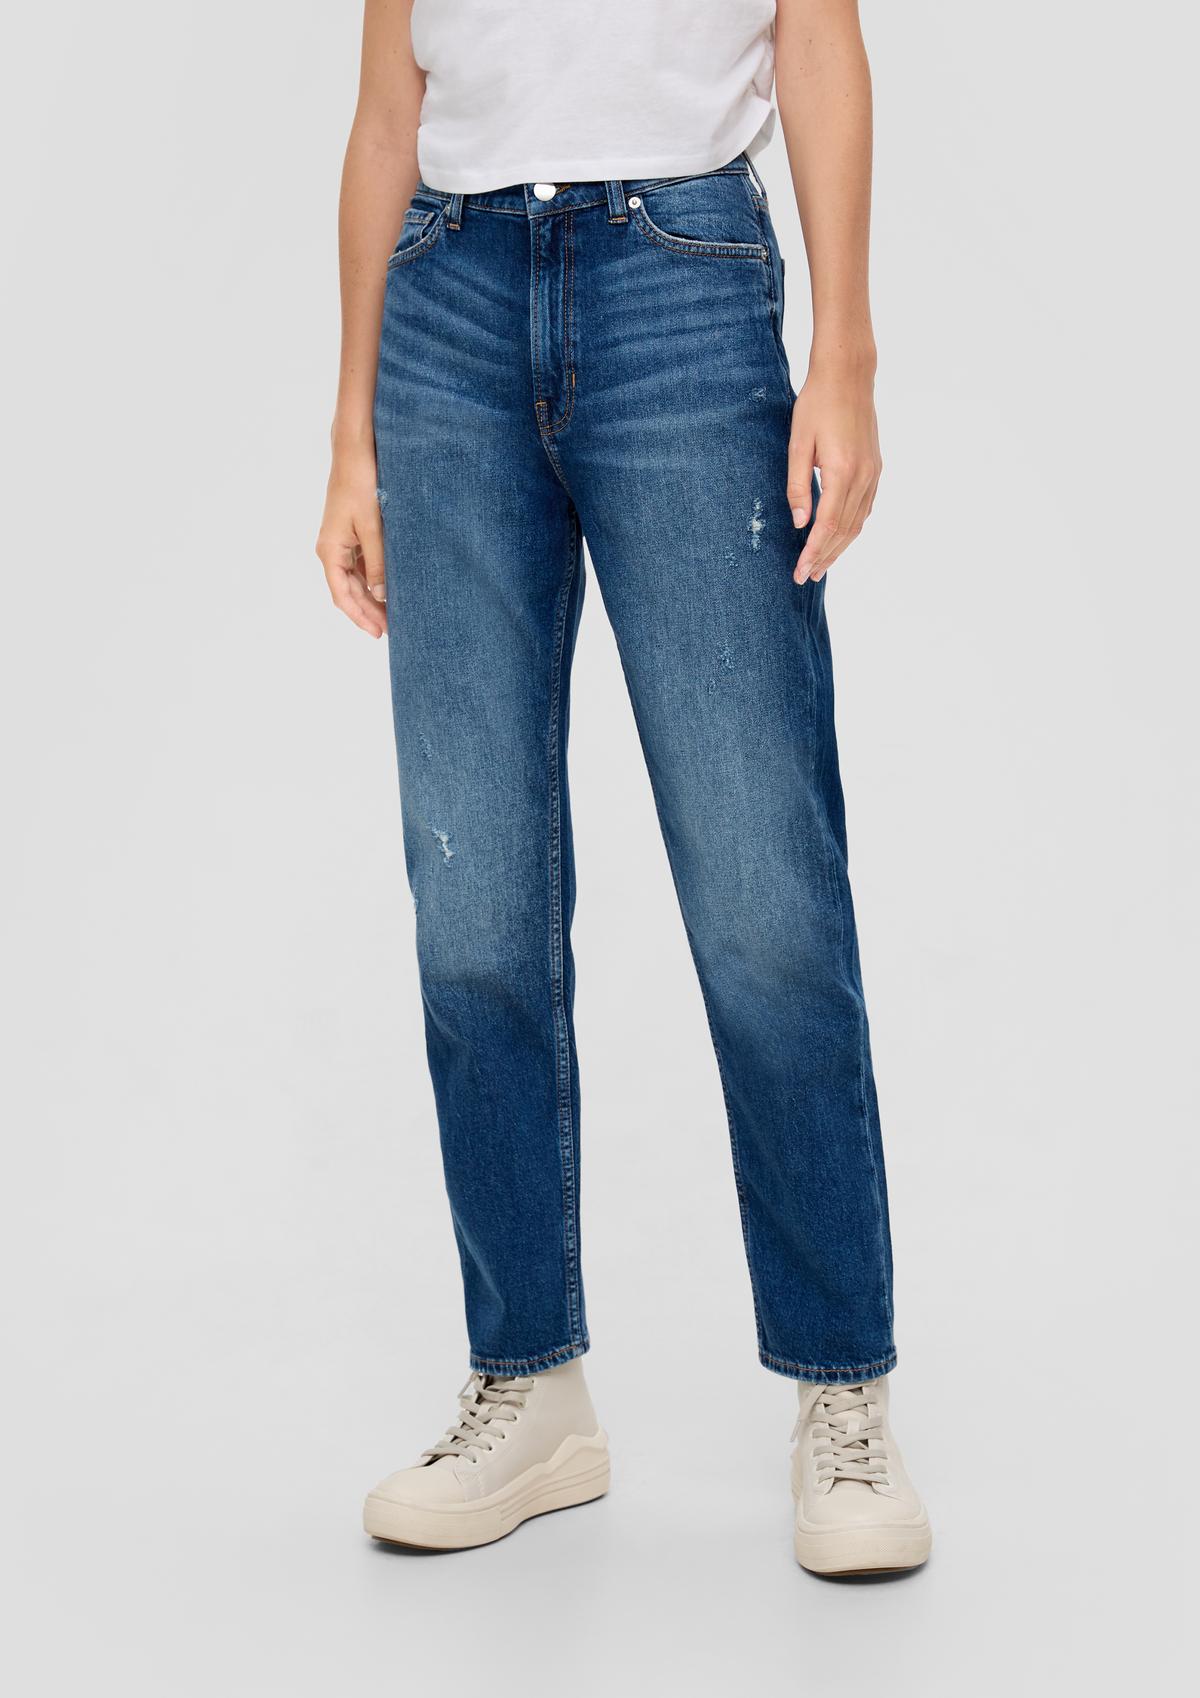 s.Oliver Jeans dolžine do gležnjev/kroj Regular Fit/High Rise/ravne hlačnice